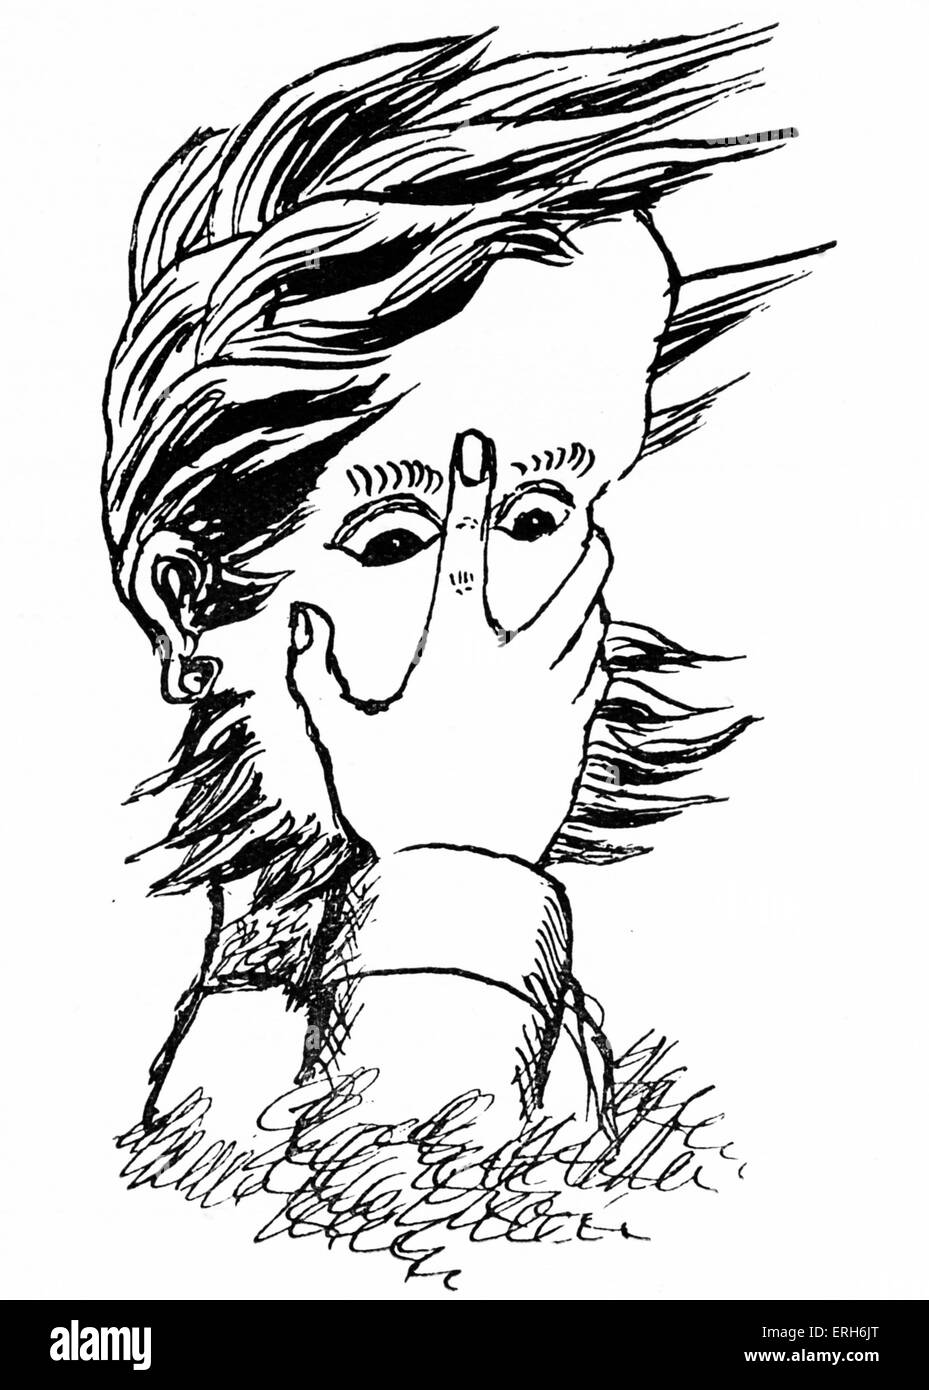 Lewis Carroll - autoportrait caricature, intitulée : "à quoi je ressemble quand je suis conférences'. (De son vrai nom révérend Charles Banque D'Images